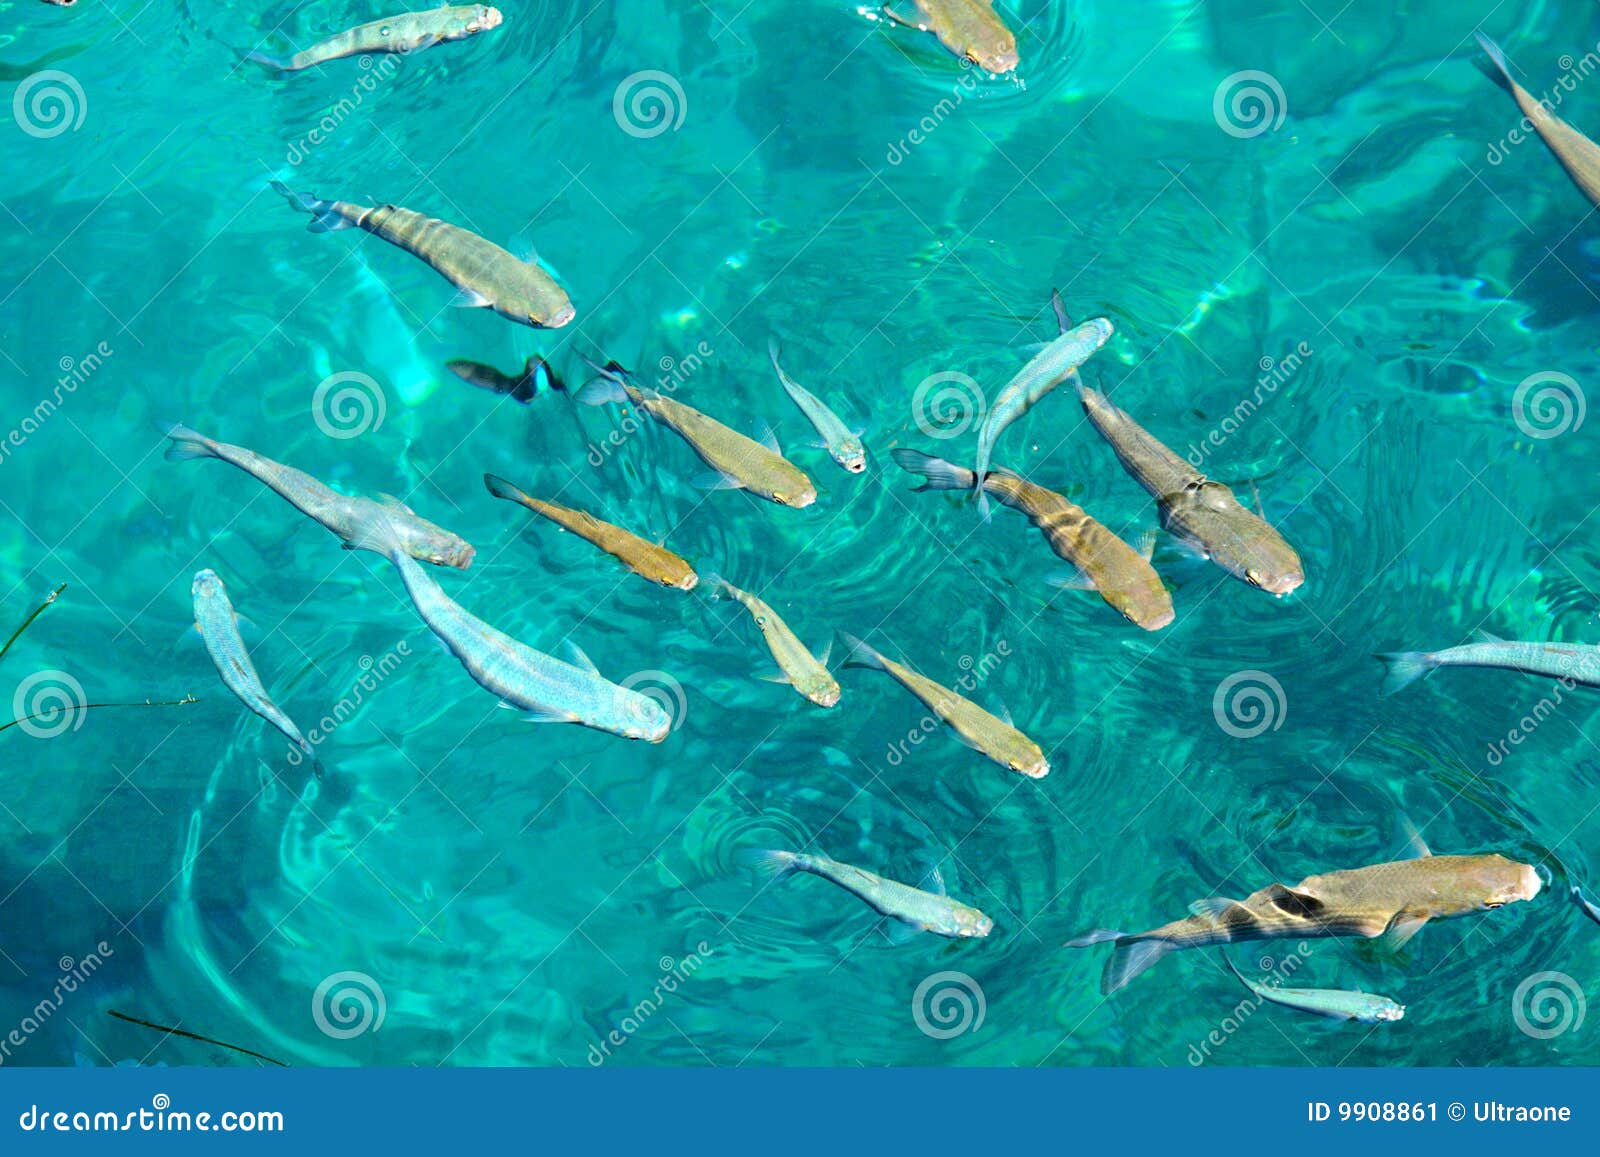 Видеть много рыб в прозрачной воде. Рыбы в прозрачной воде. Рыбки в воде вид сверху. Рыба в воде сверху. Рыба под водой вид сверху.